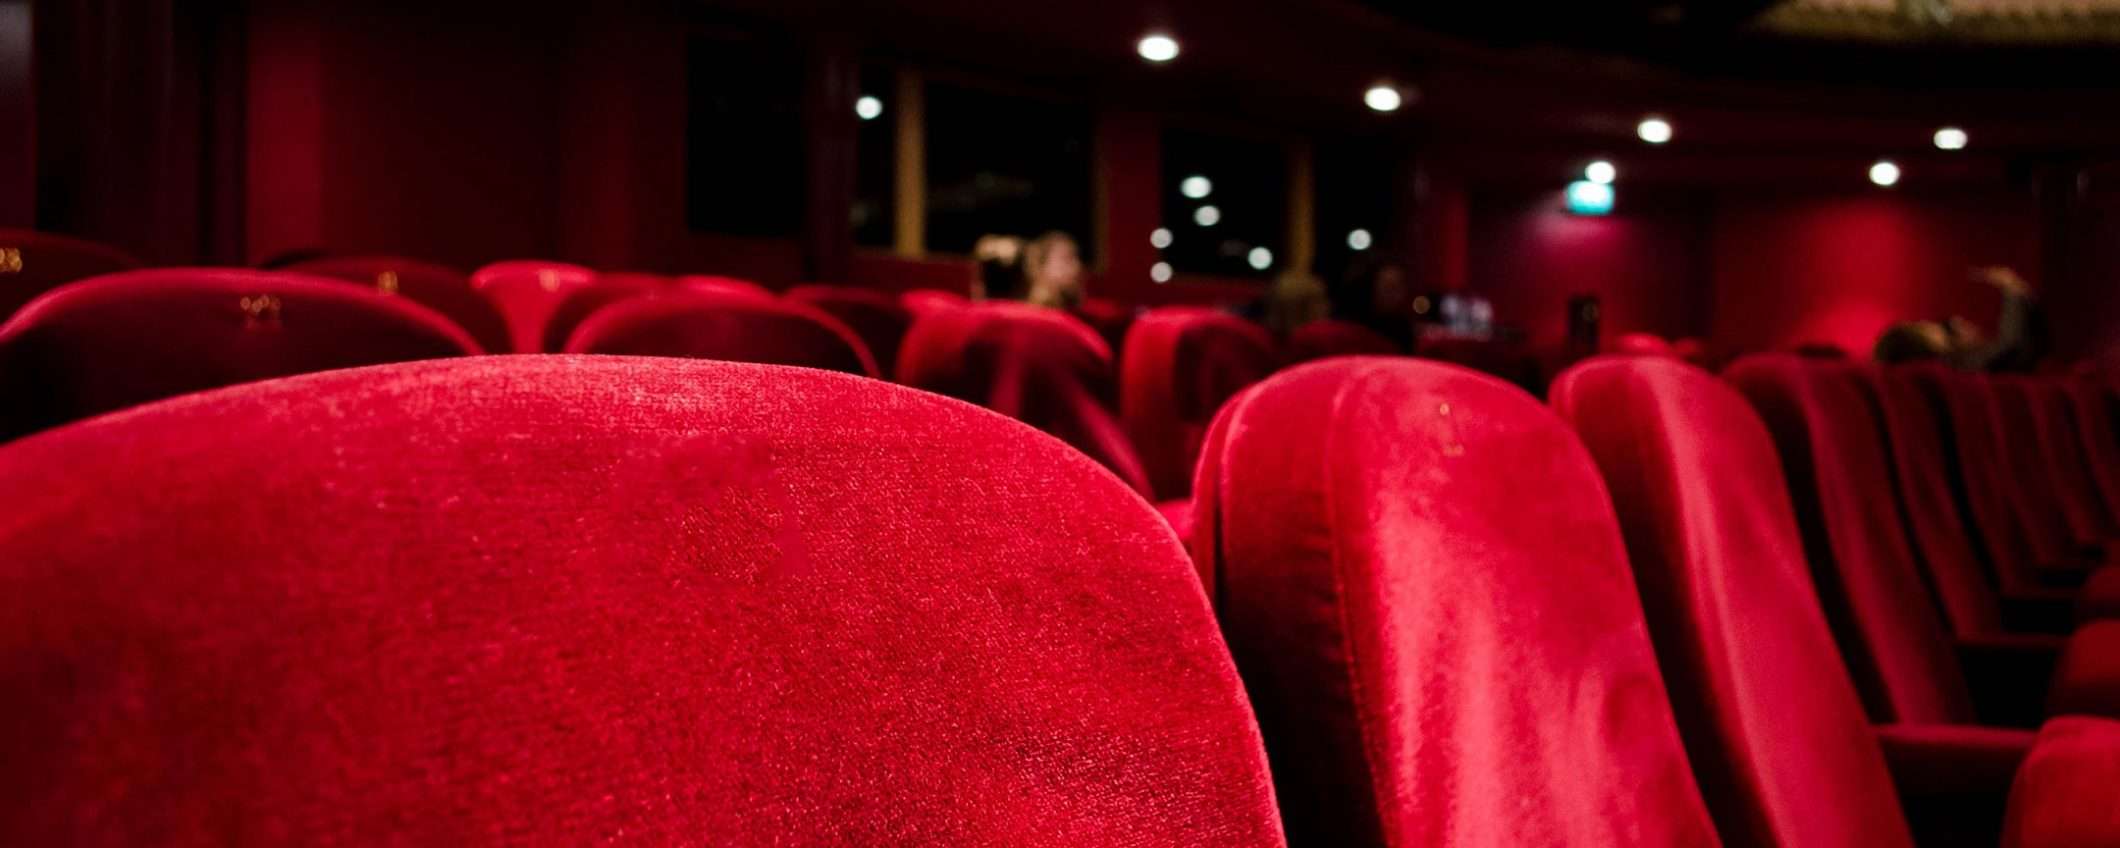 Film al cinema, poi in streaming: è anti-Netflix?